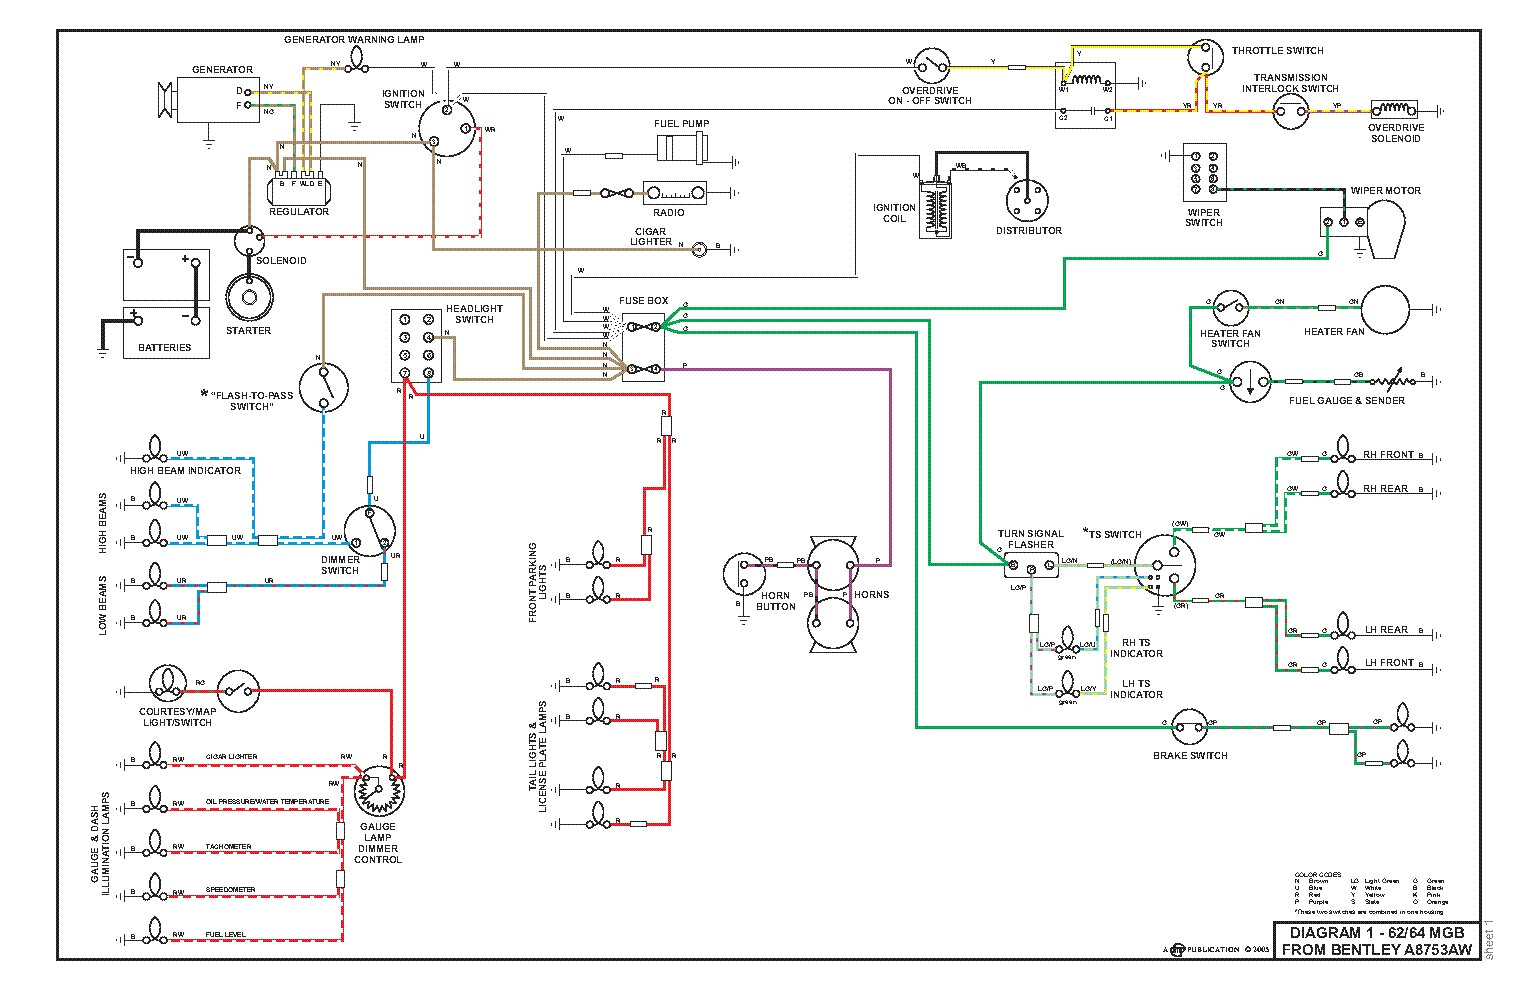 car wiring diagrams pdf wiring diagram name automotive wiring diagram symbols pdf automotive wiring diagram pdf